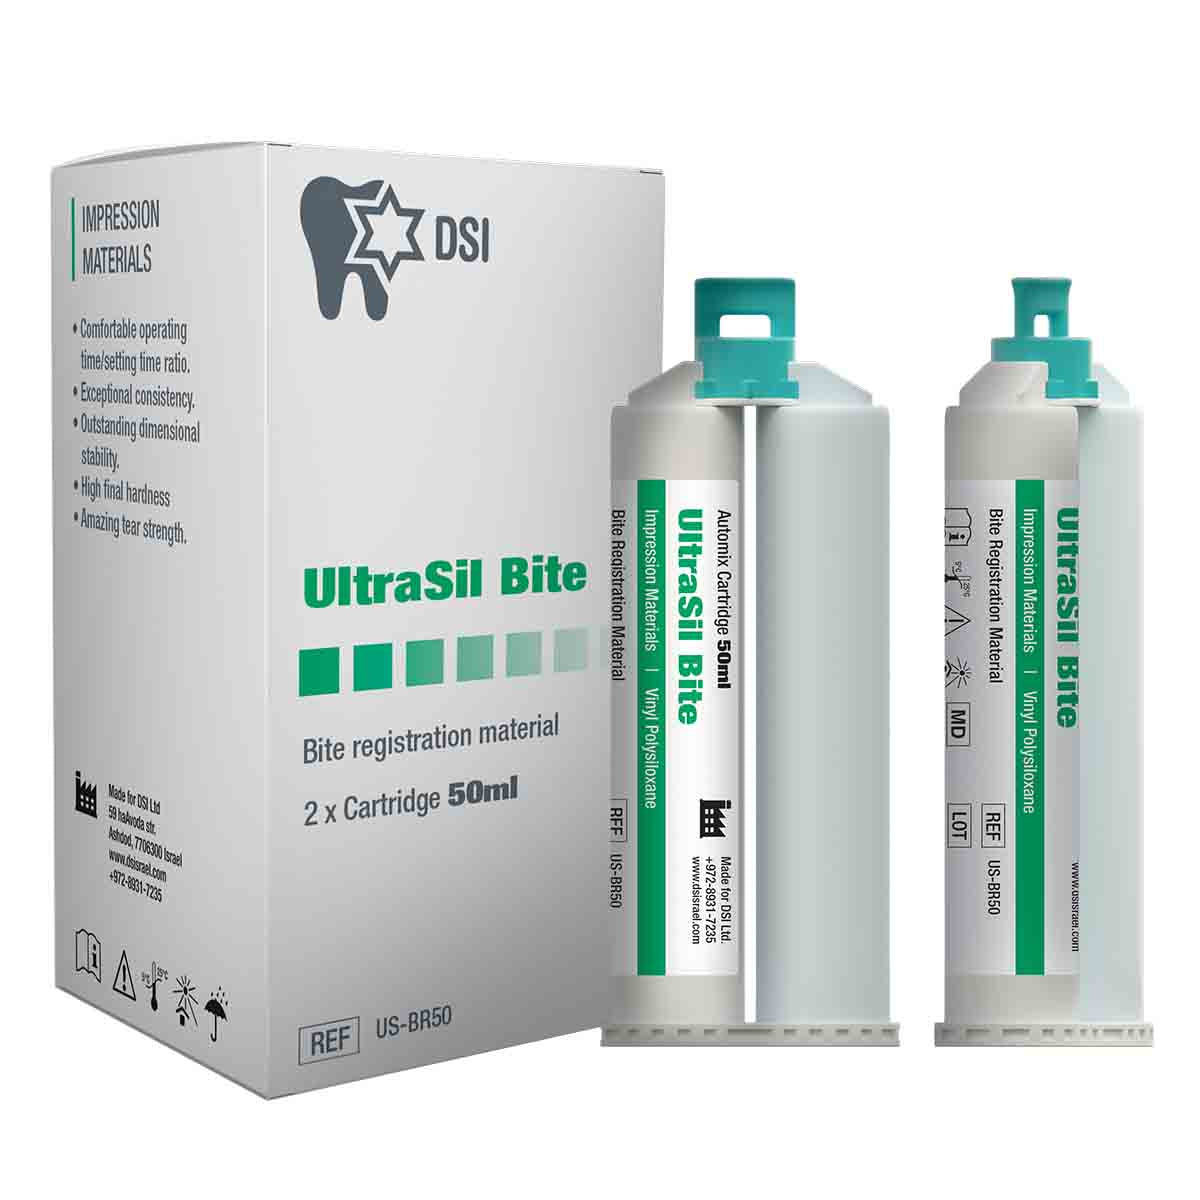 DSI Ultrasil Bite